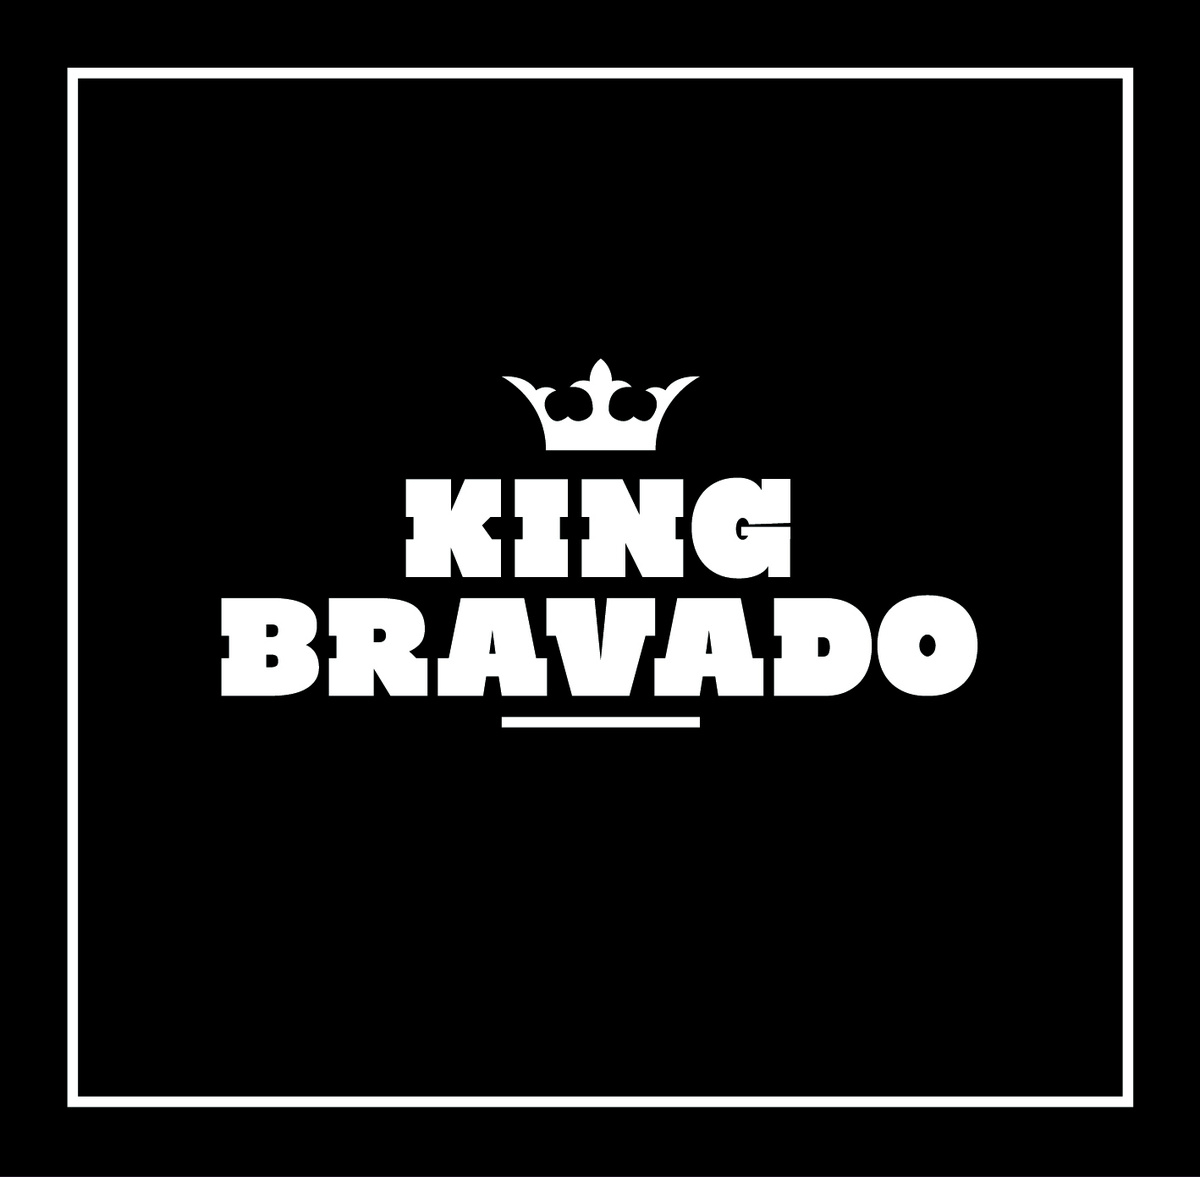 KING BRAVADO